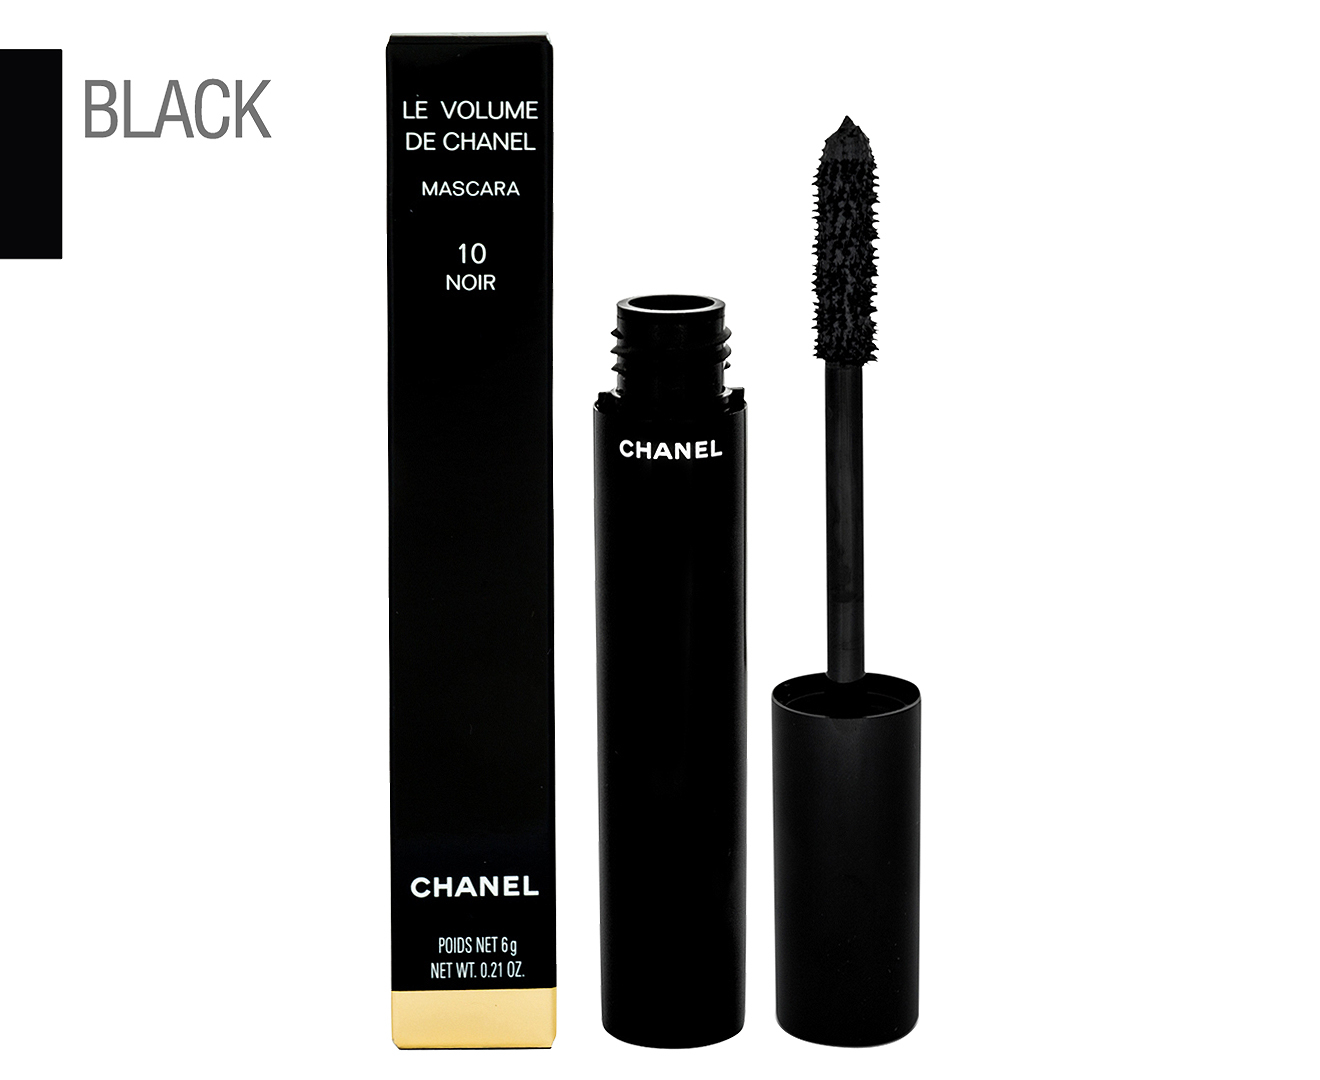 Chanel Le Volume De Chanel Mascara 6g - #10 Noir